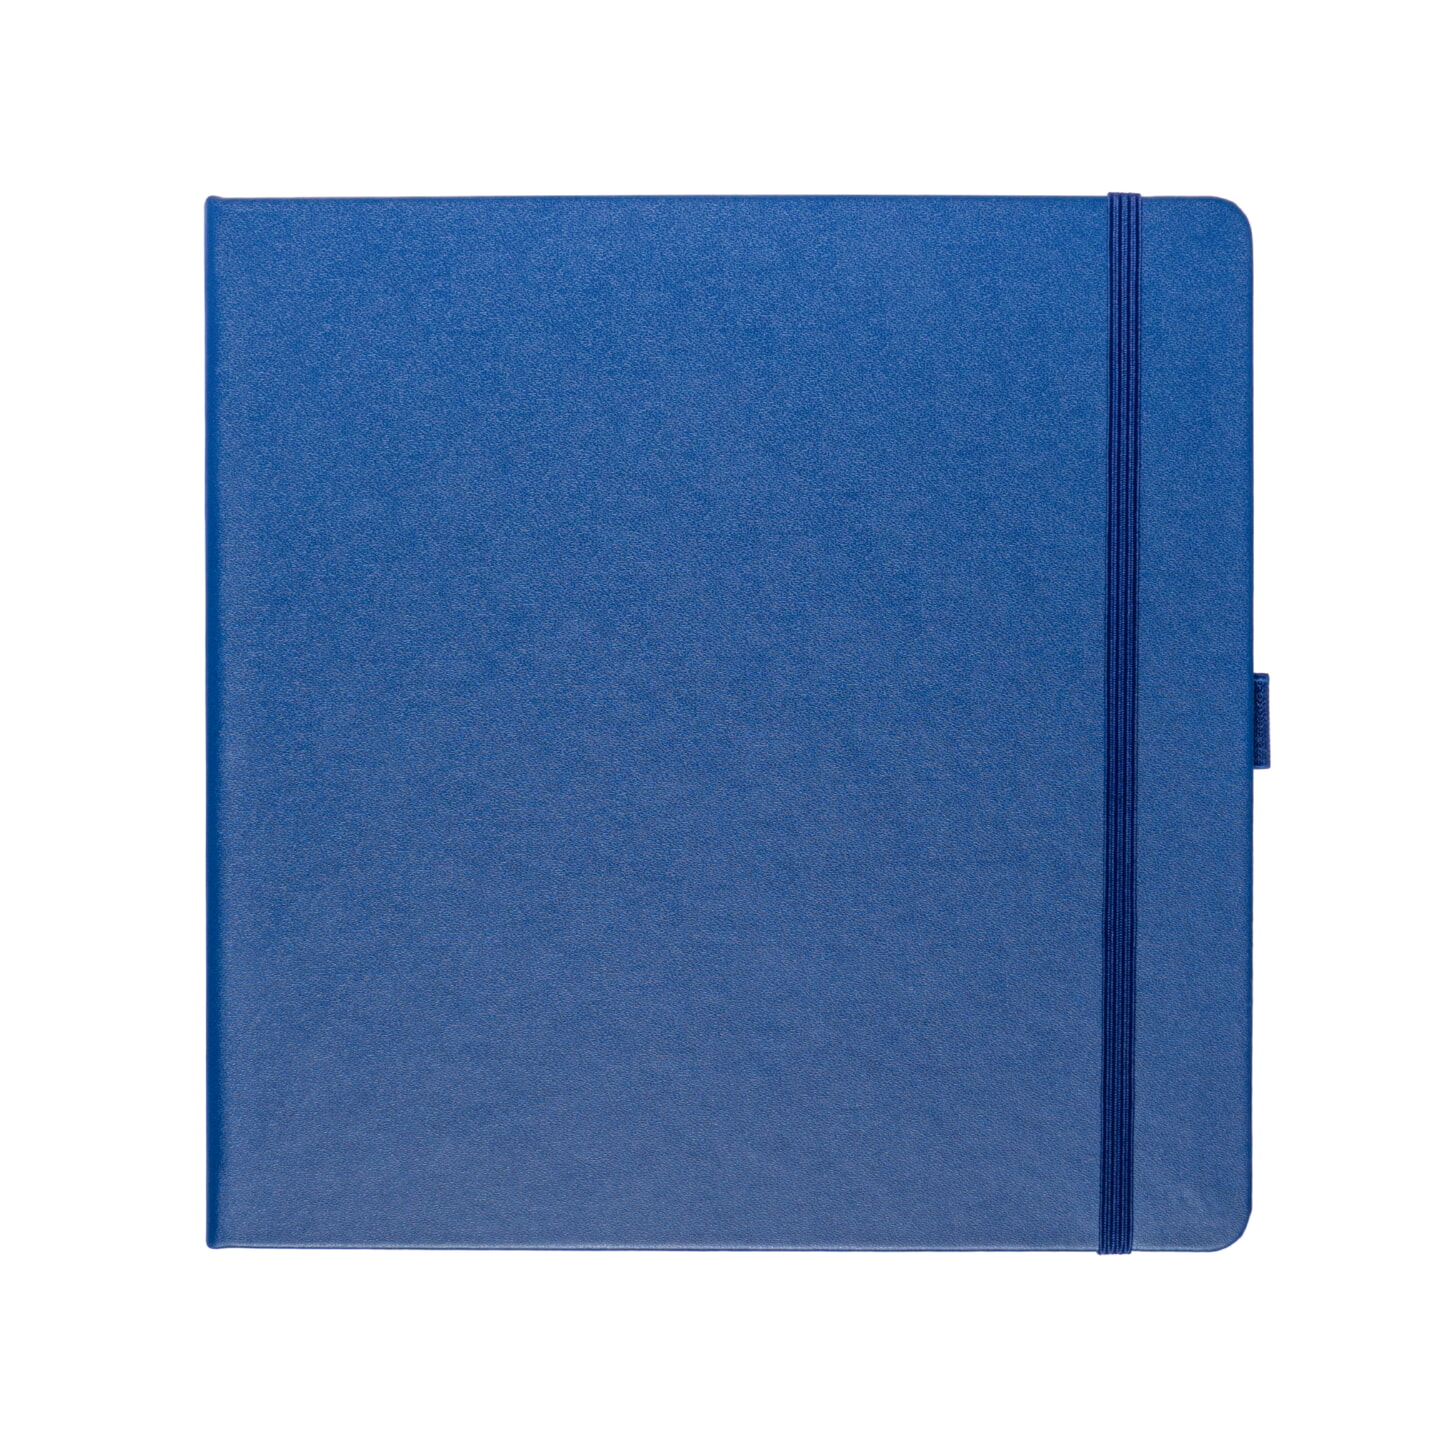 Блокнот для зарисовок Sketchmarker 140г/кв.м 20*20cм 80л твердая обложка Королевский синий